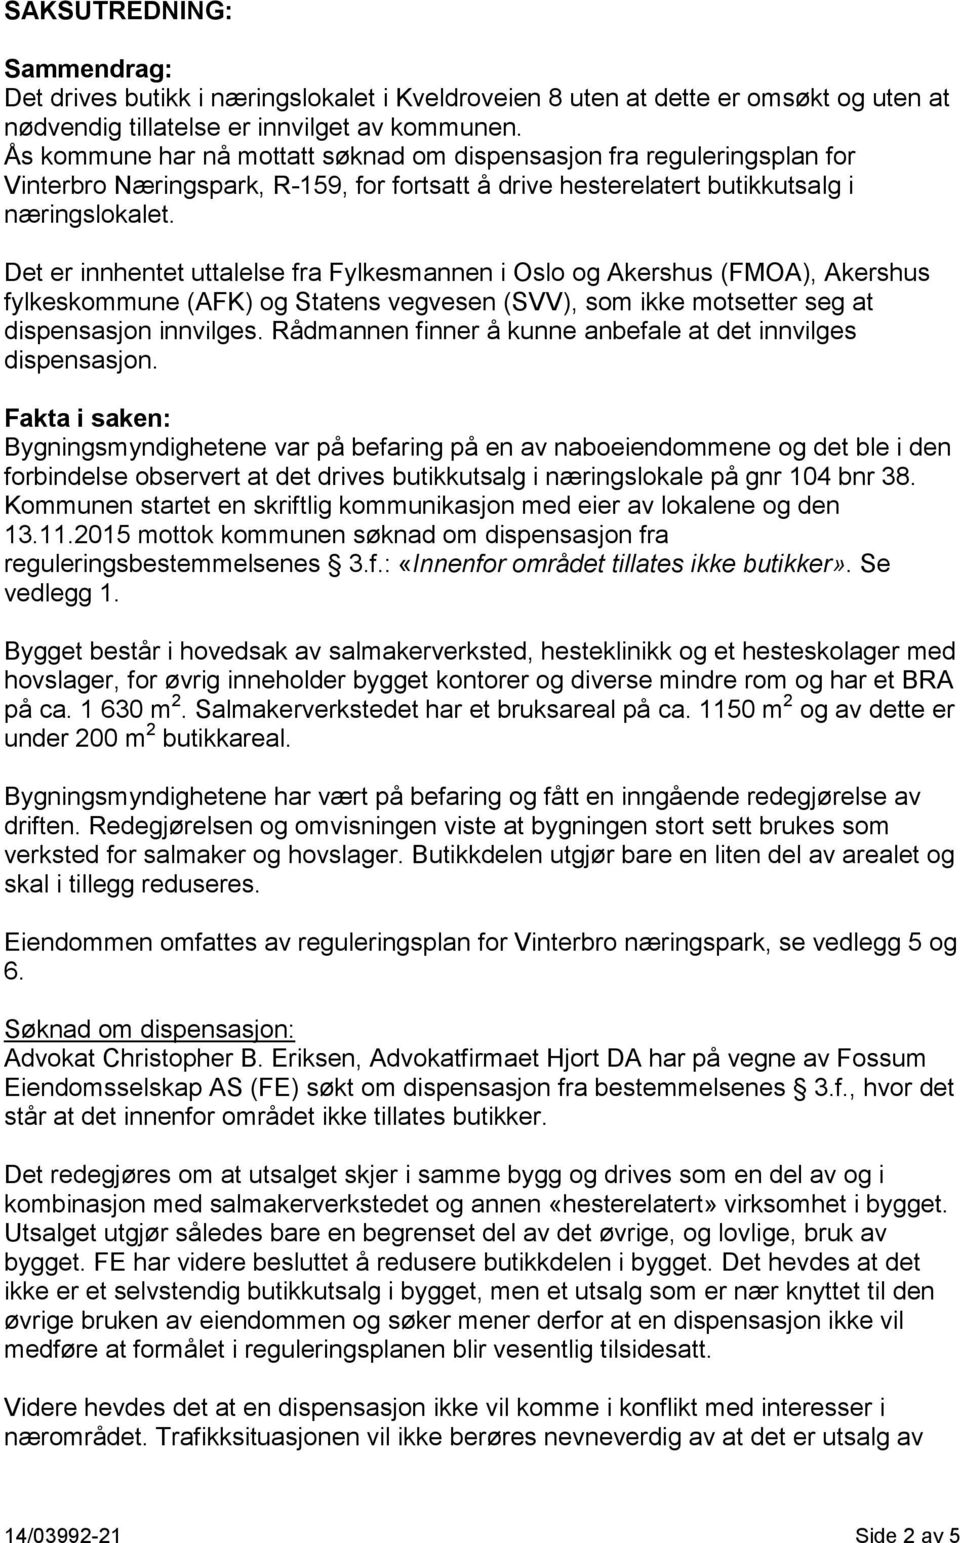 Det er innhentet uttalelse fra Fylkesmannen i Oslo og Akershus (FMOA), Akershus fylkeskommune (AFK) og Statens vegvesen (SVV), som ikke motsetter seg at dispensasjon innvilges.